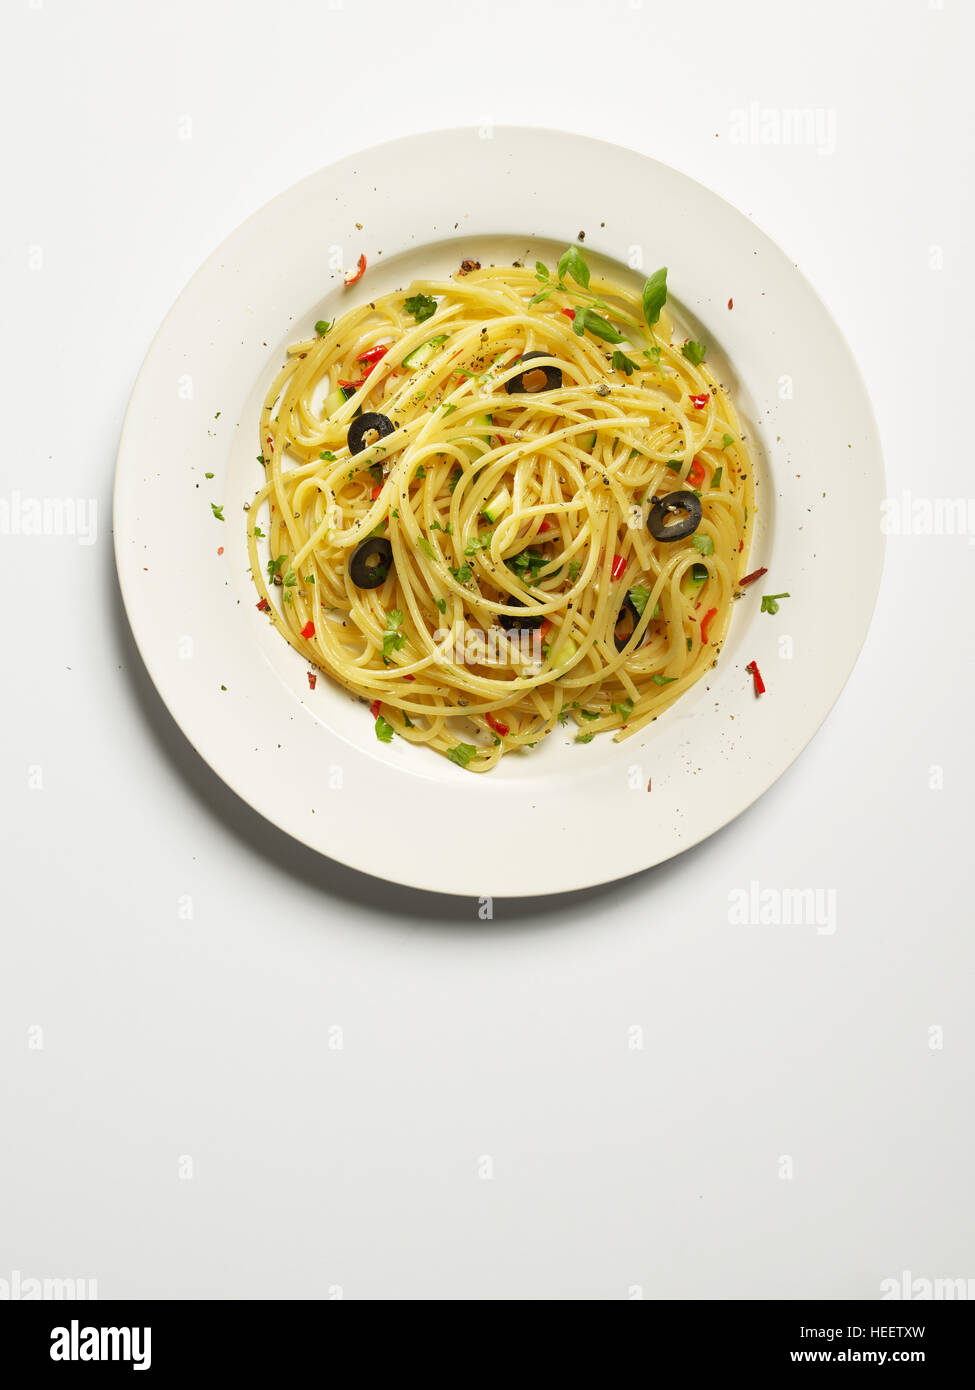 Spaghetti aglio, peperoni rossi, olio d'oliva, la zucchina, olive nere e prezzemolo sulla piastra bianca - pasta aglio olio e peperoncino Foto Stock